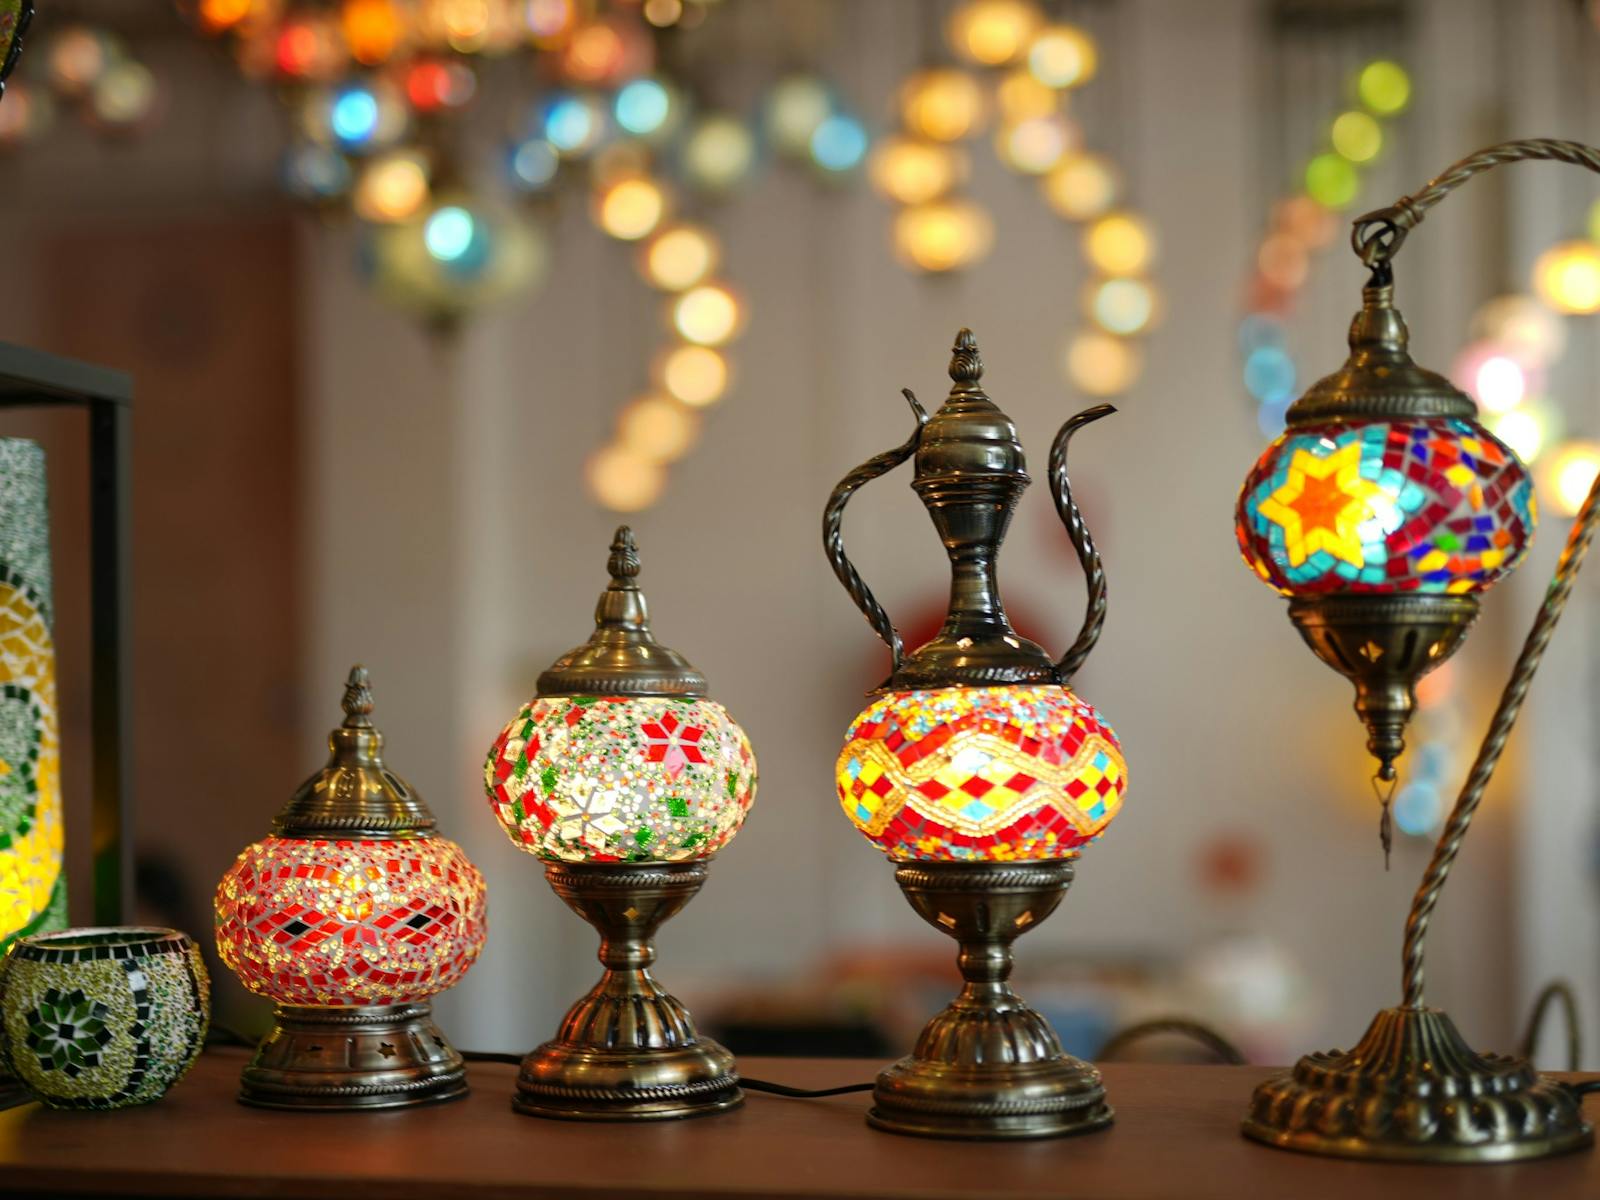 Mosaic Turkish Lamp